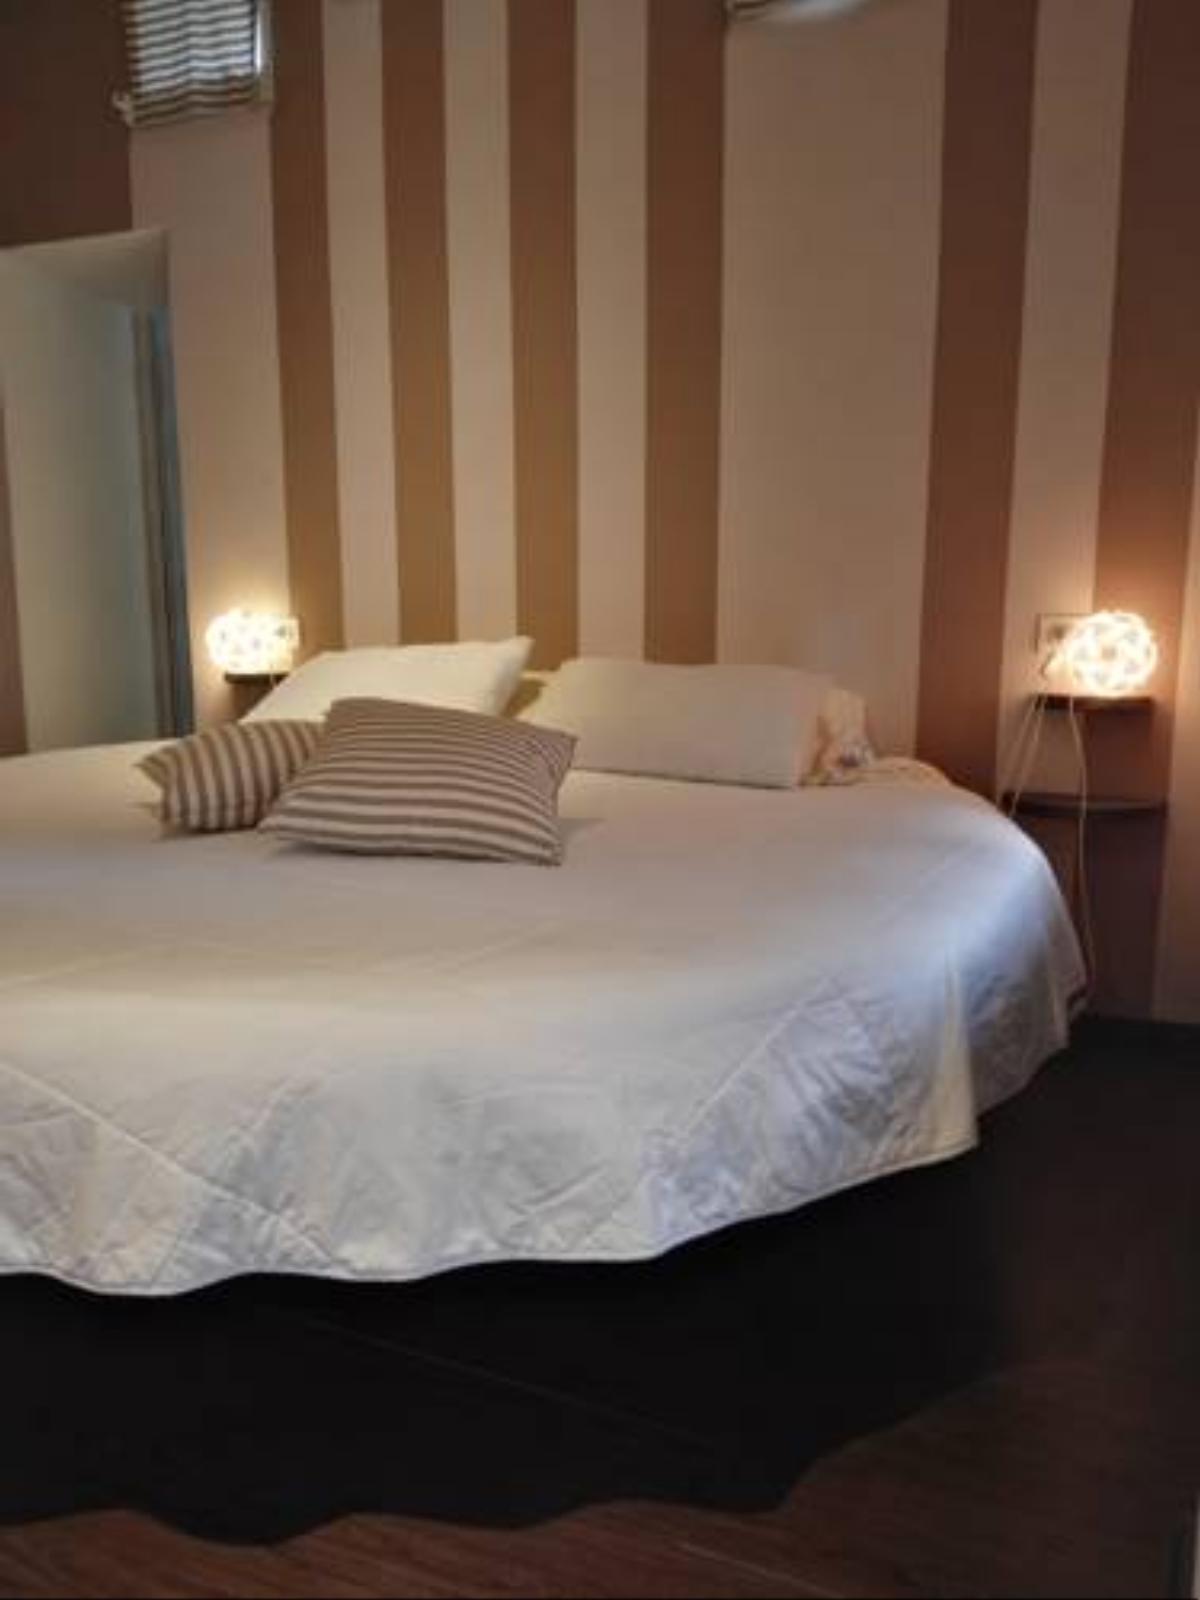 Nandone Room Hotel Cerliano Italy